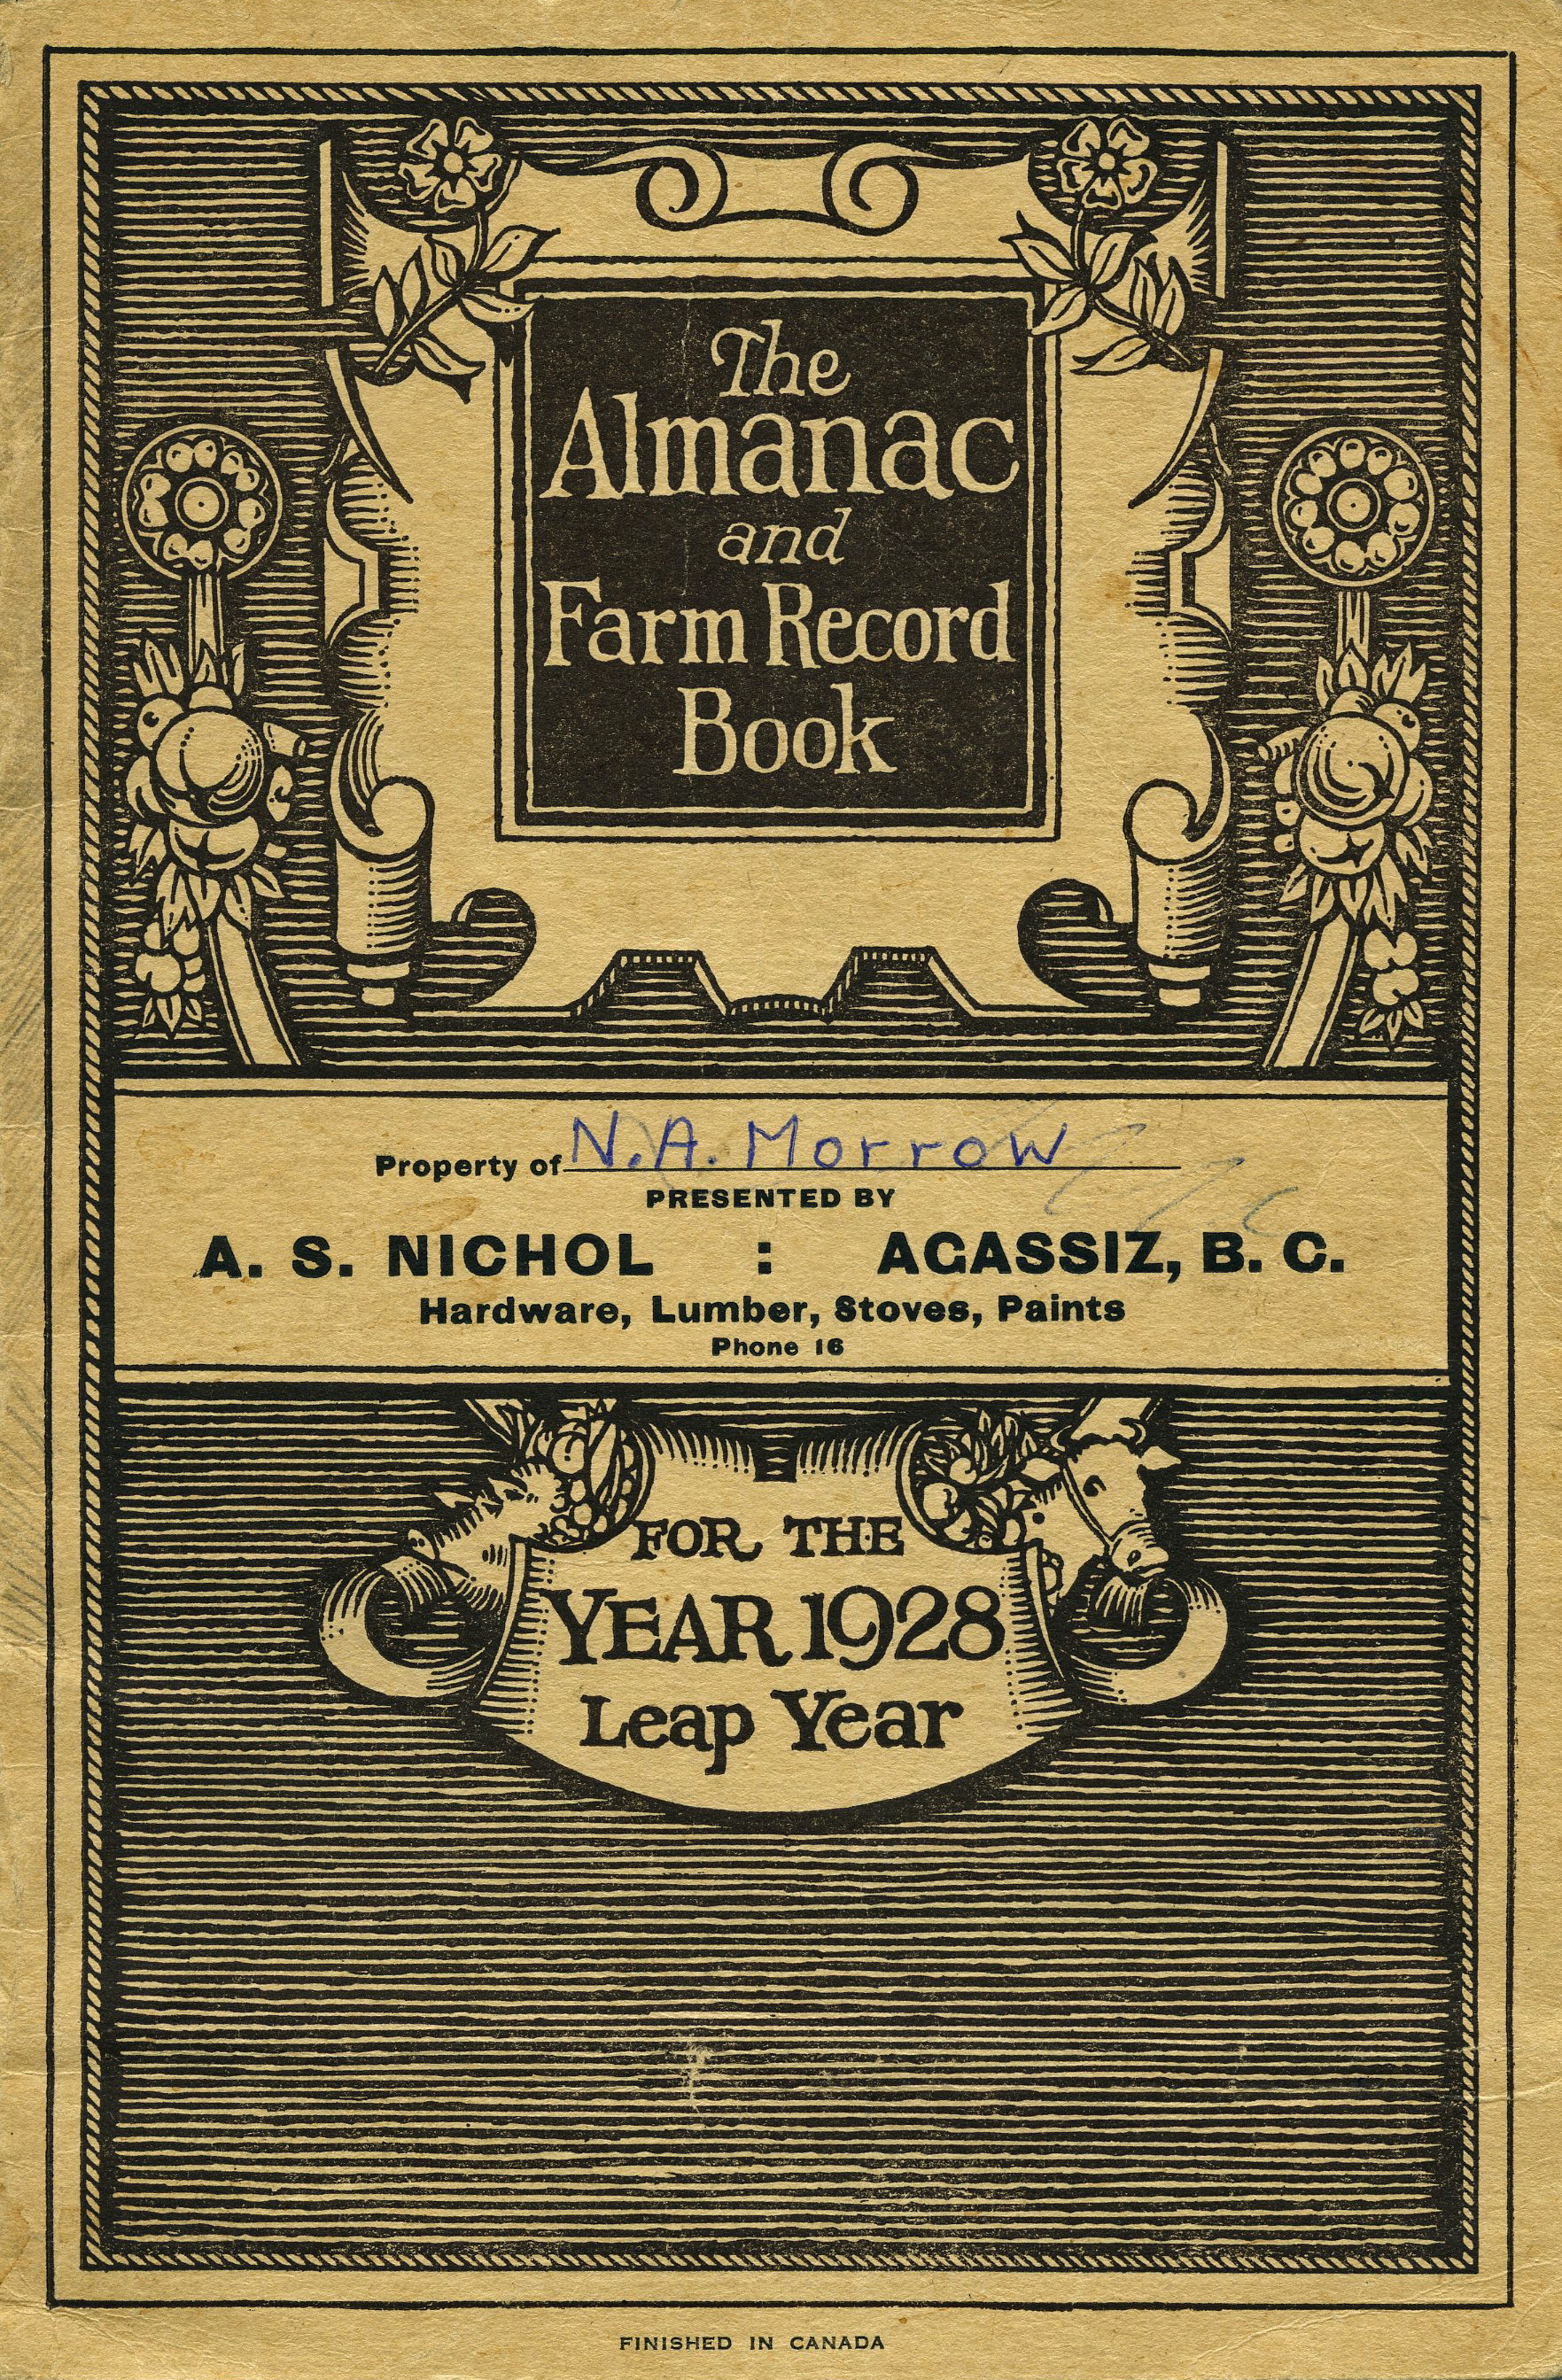 Image en couleur de la couverture du 1928 Almanac and Farm Record Book (almanach et livre des registres agricoles de 1928).